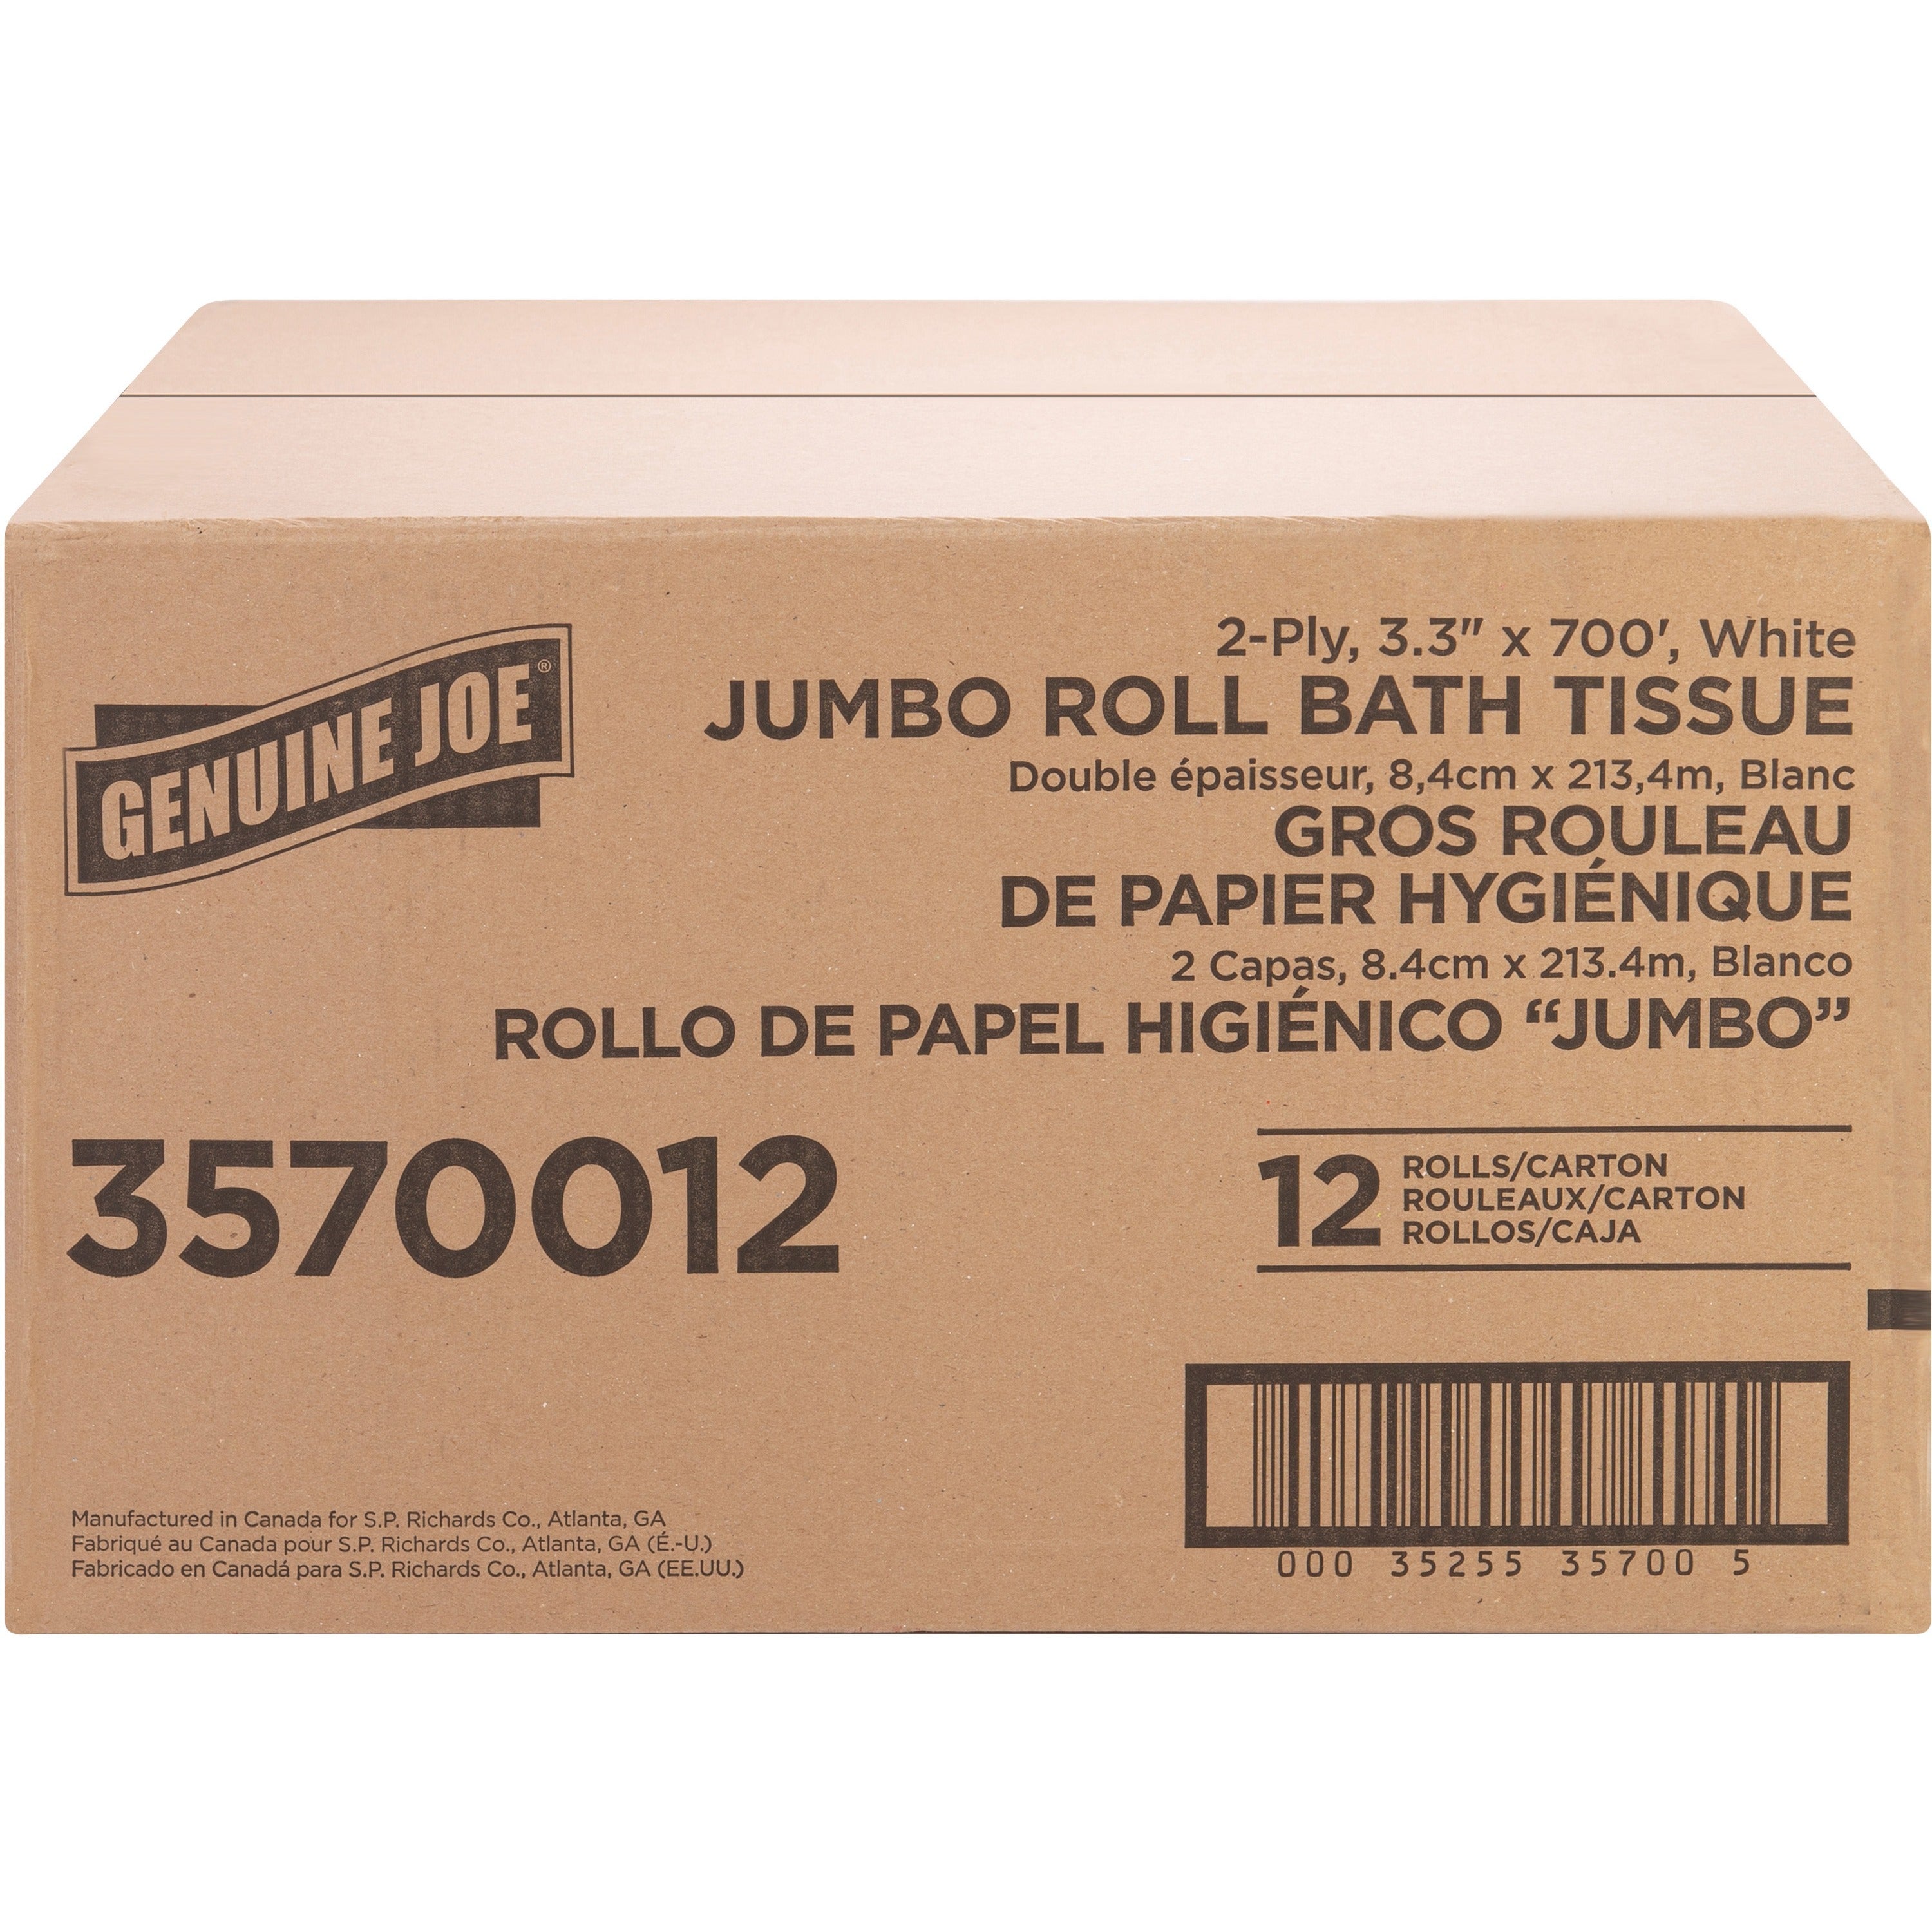 genuine-joe-jumbo-jr-dispenser-bath-tissue-roll-2-ply-330-x-700-ft-888-roll-diameter-white-fiber-sewer-safe-septic-safe-for-bathroom-12-carton_gjo3570012 - 2